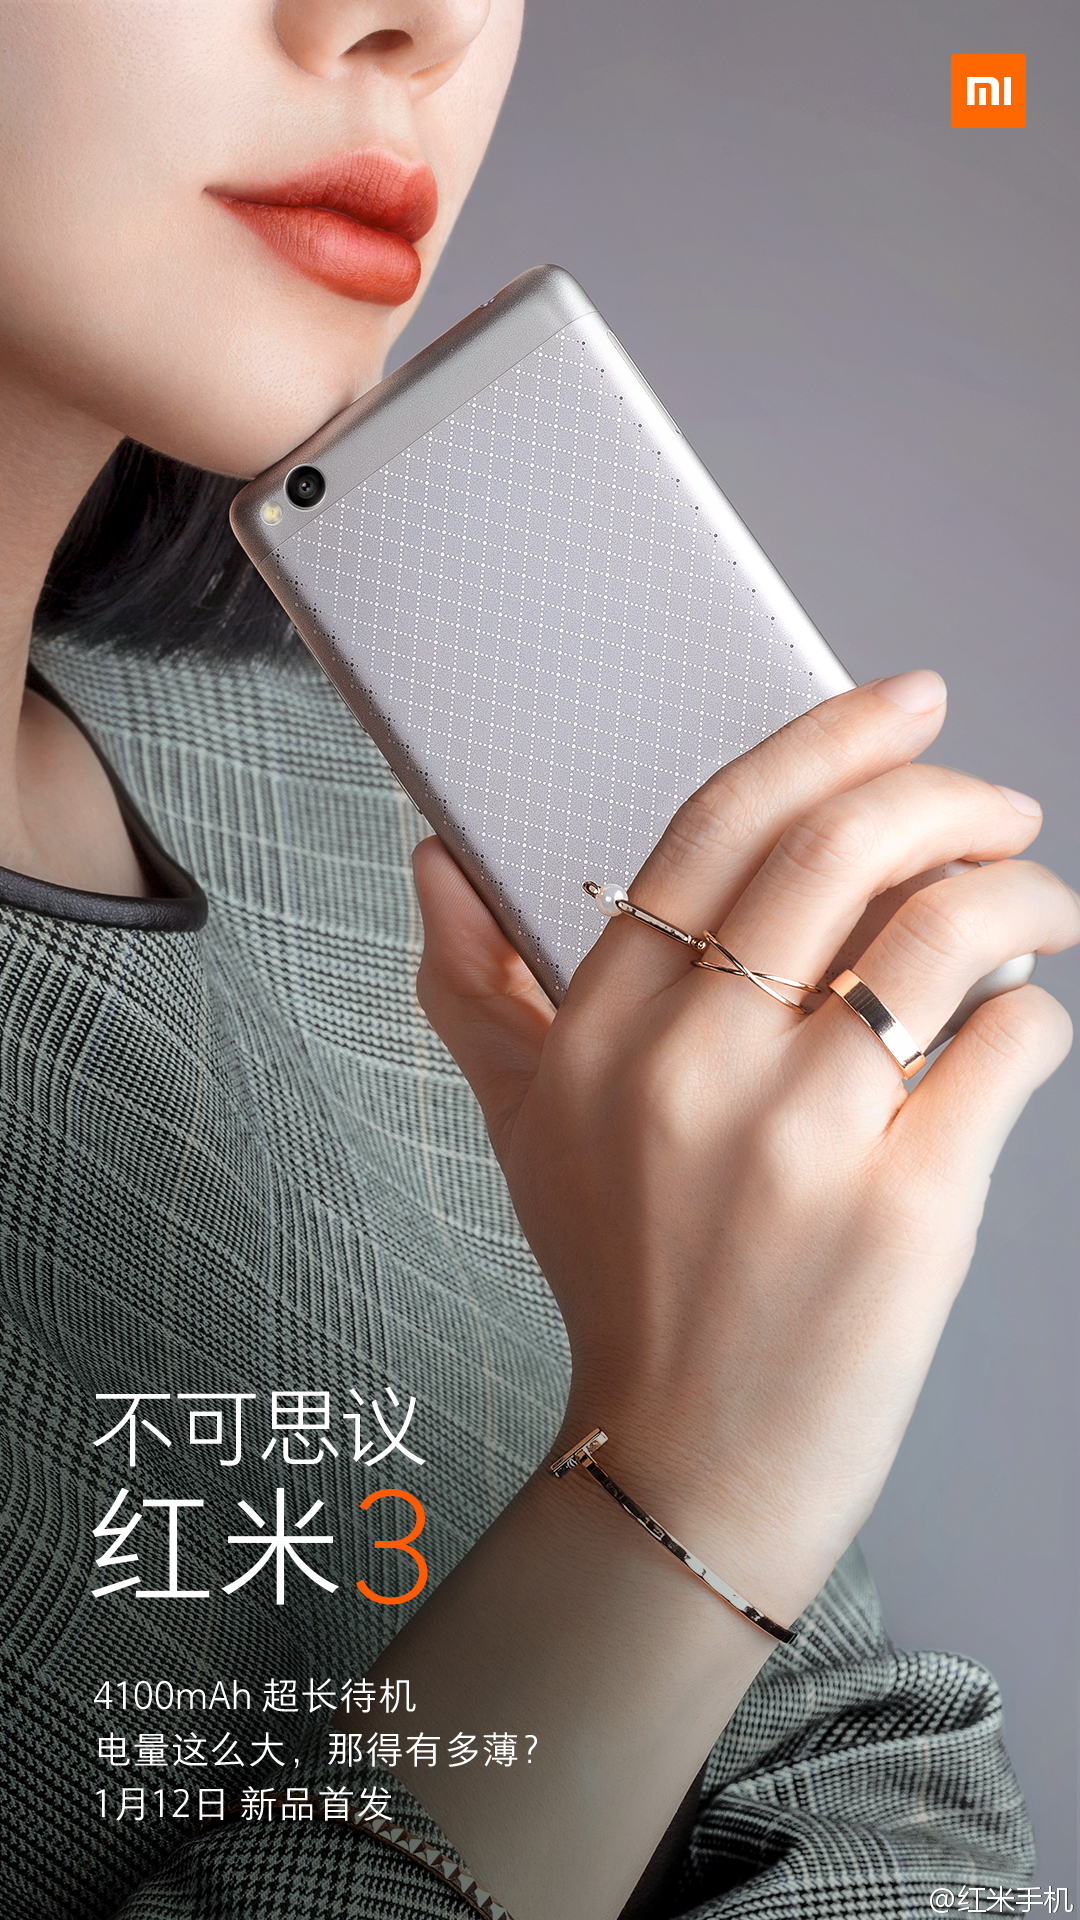 Xiaomi ra mắt Redmi 3: Cấu hình tốt, pin khủng, giá siêu hấp dẫn